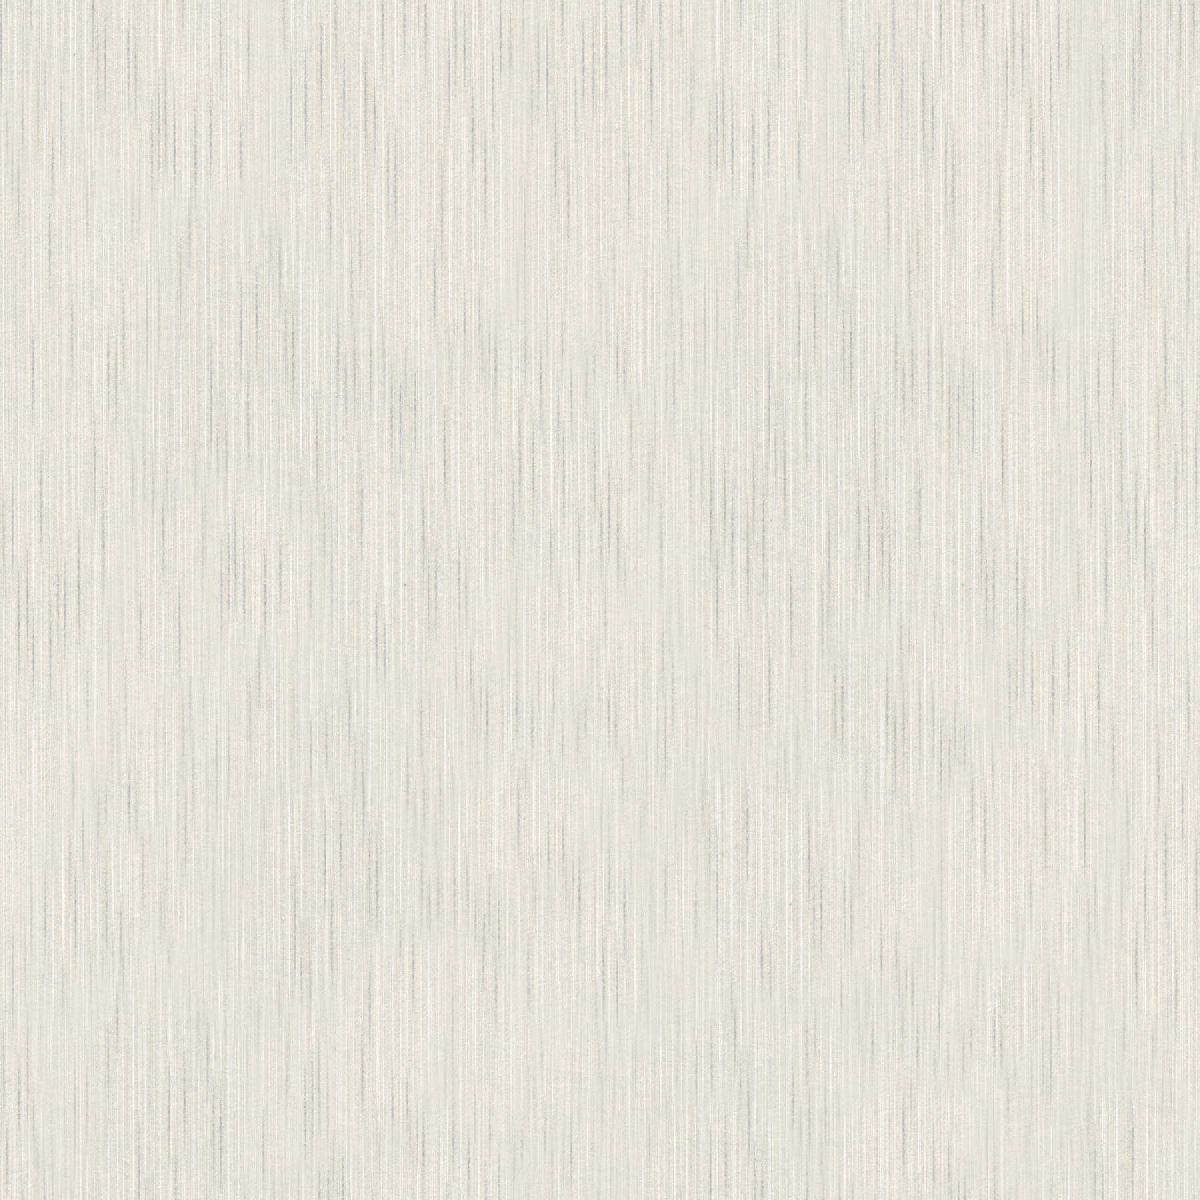 Vliestapete AP Finest 306834 - Floral Muster - Grau, Weiß